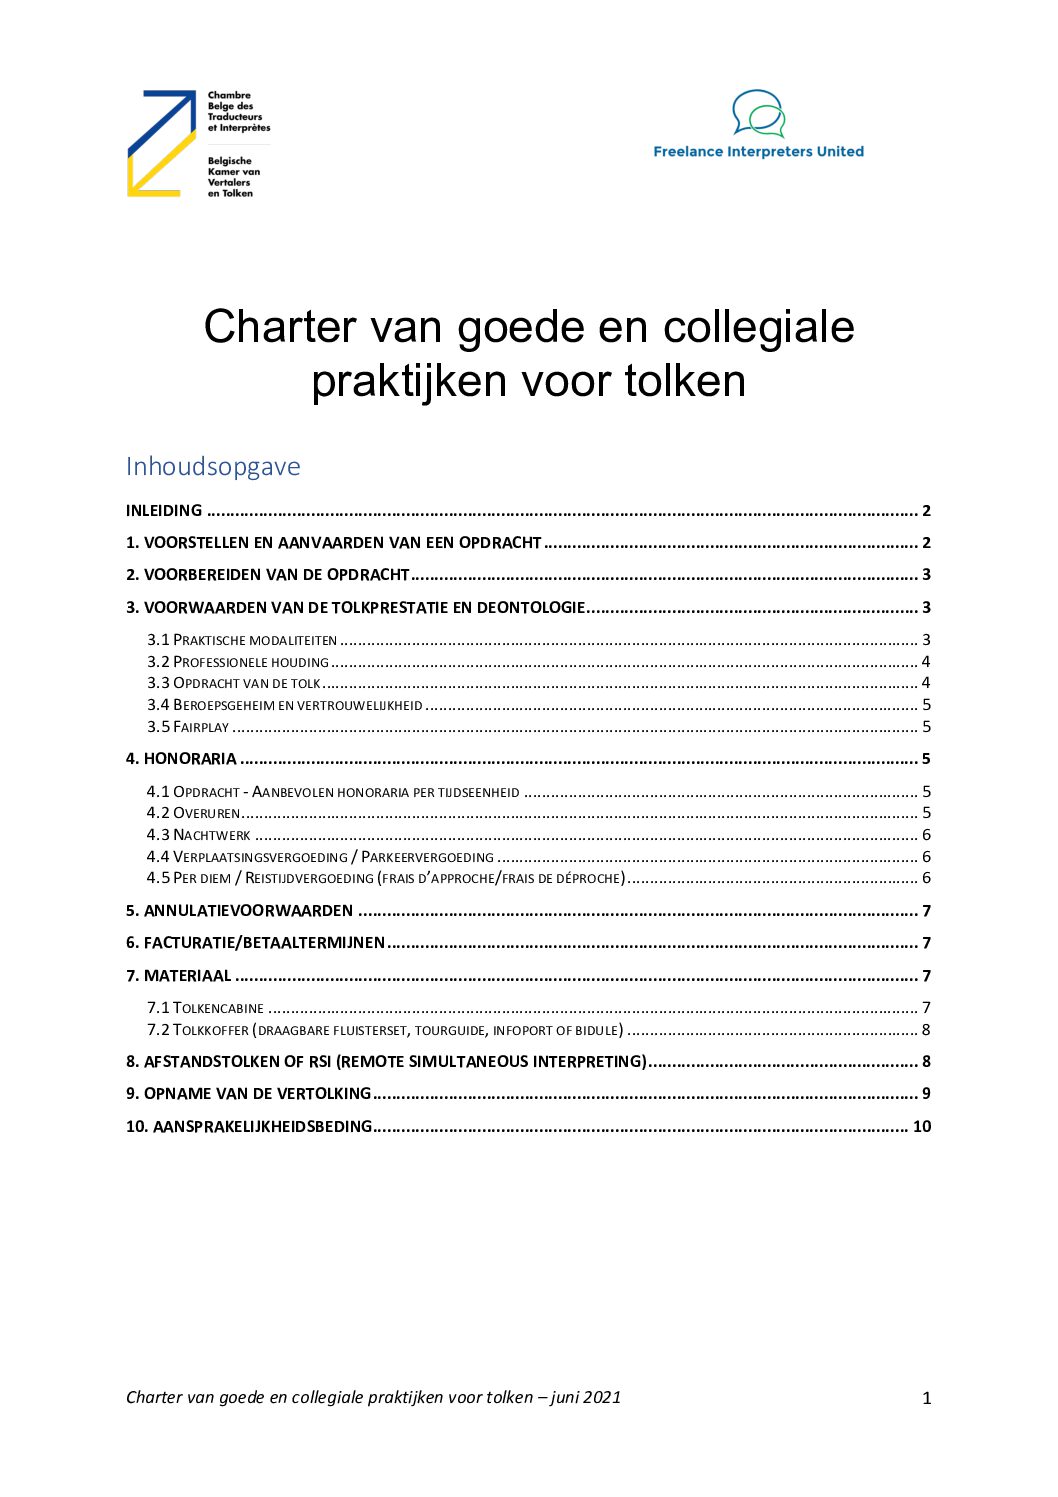 Image de présentation pour le document : Charter van goede en collegiale praktijken voor tolken – versie 2023